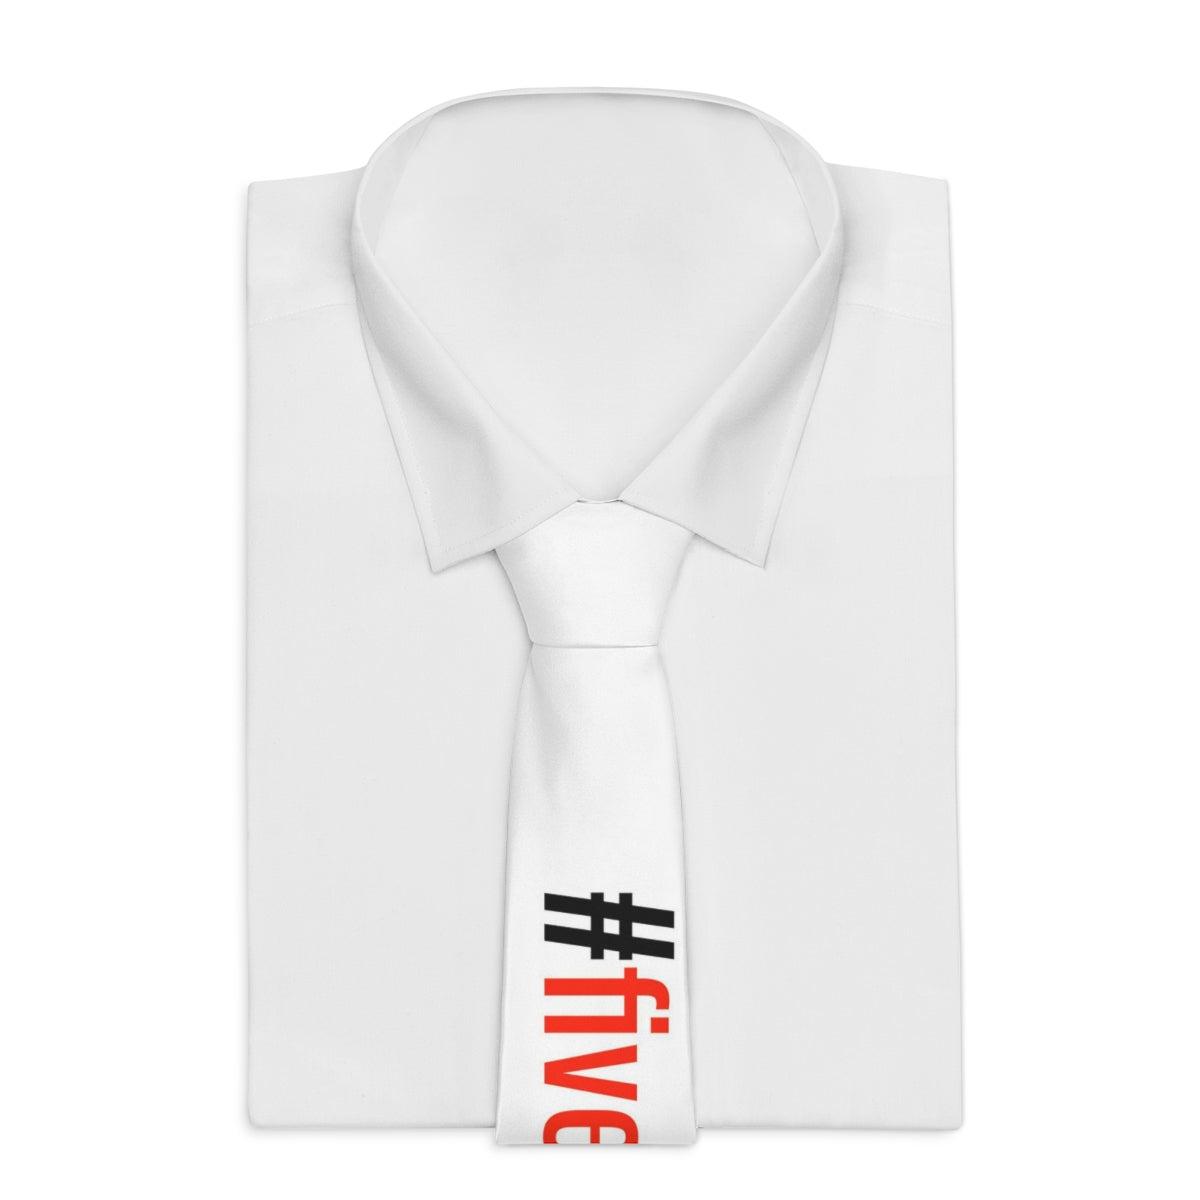 Five Toes Down # Necktie